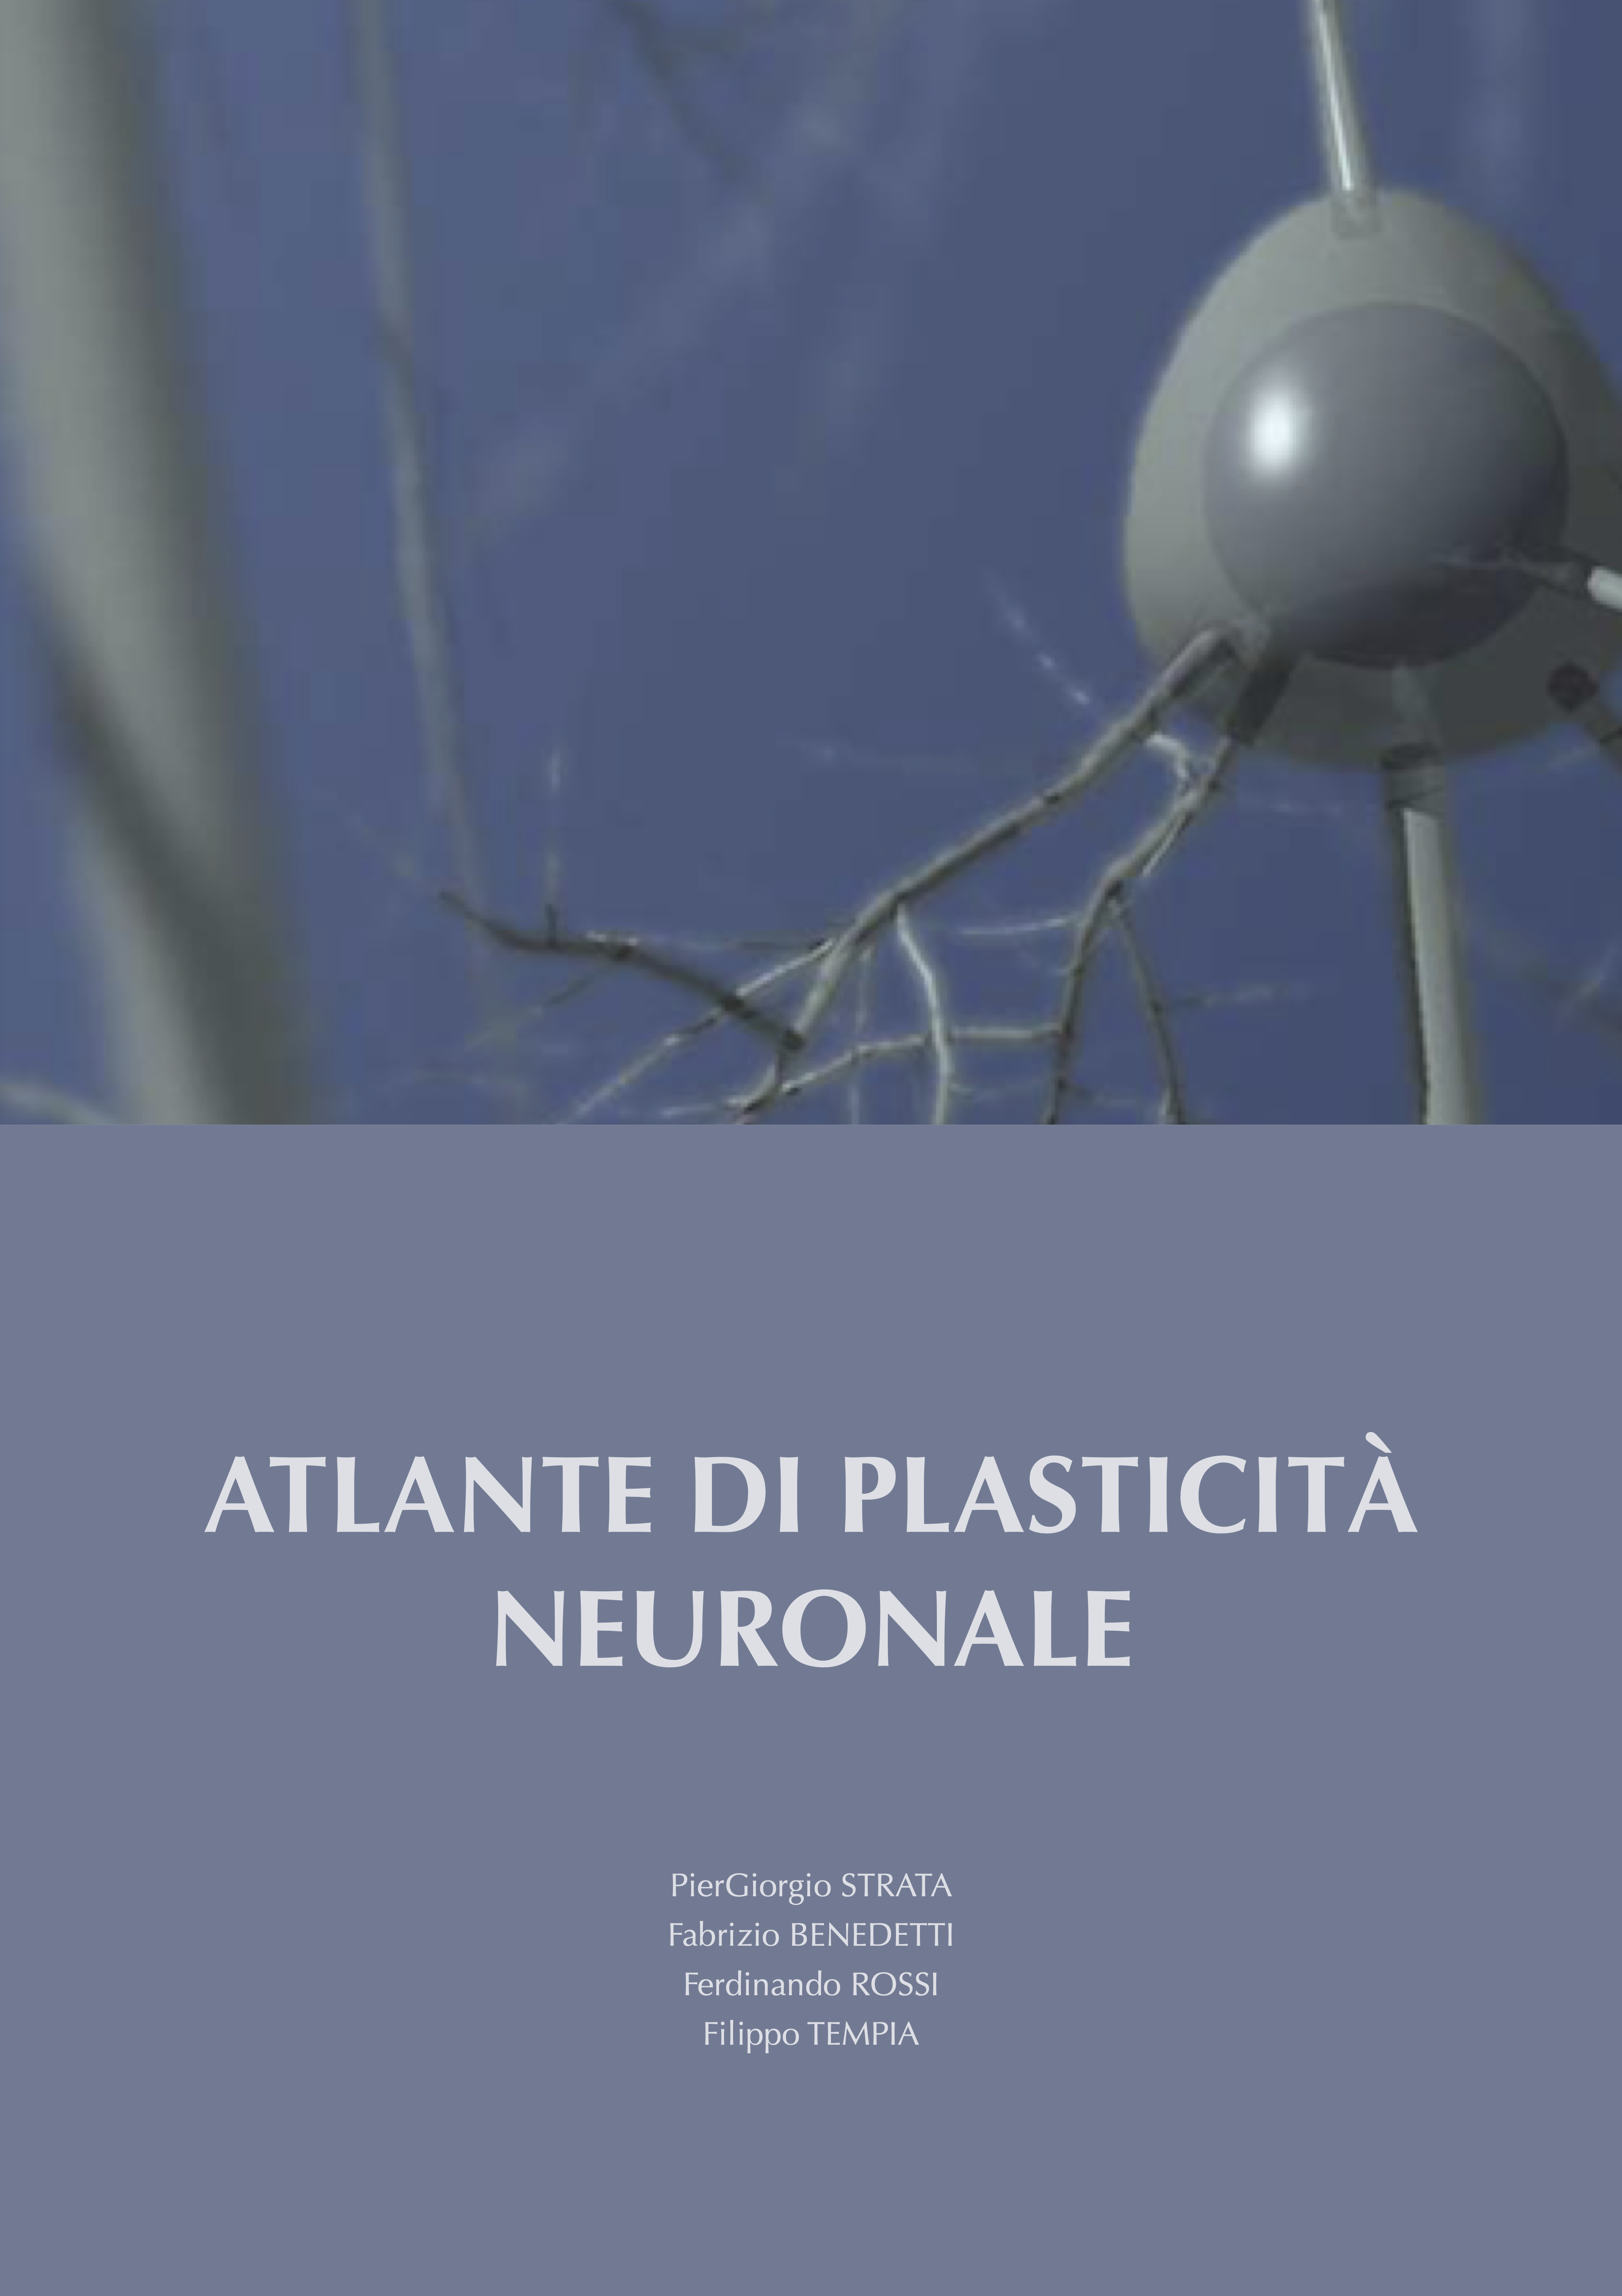 manuale di atlante neuronale